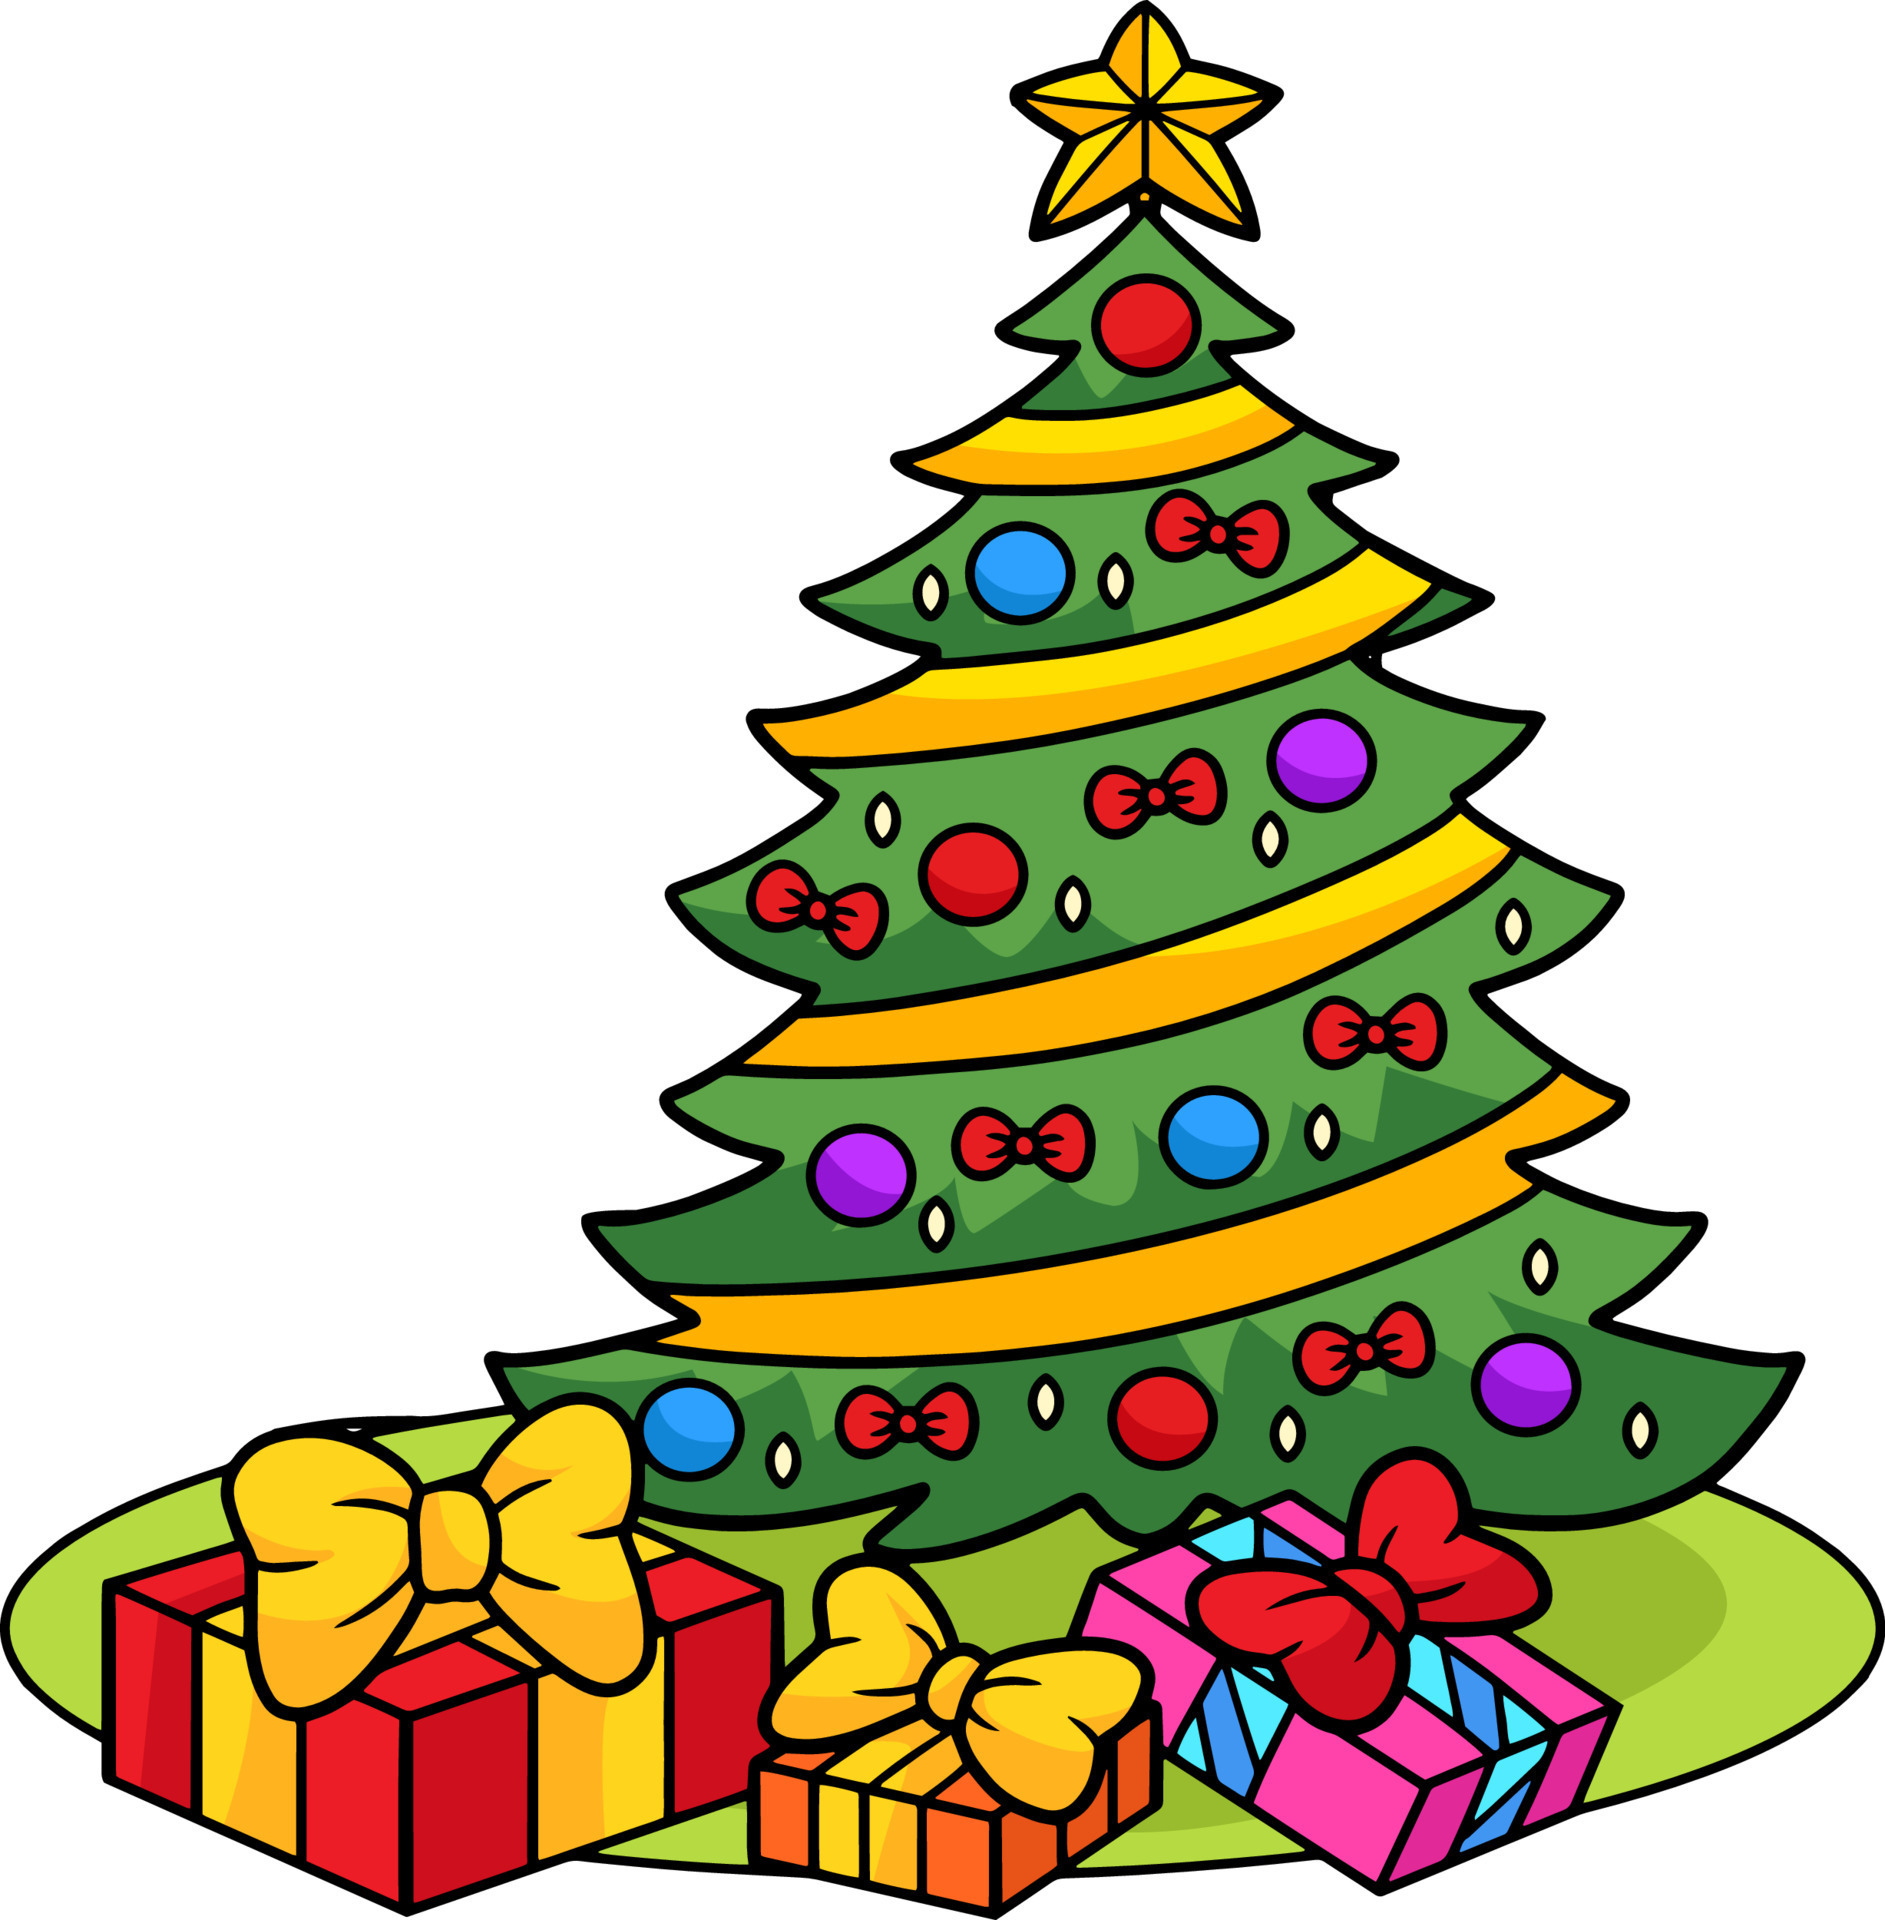 árvore de natal com clipart colorido de desenhos animados de presentes  11418537 Vetor no Vecteezy